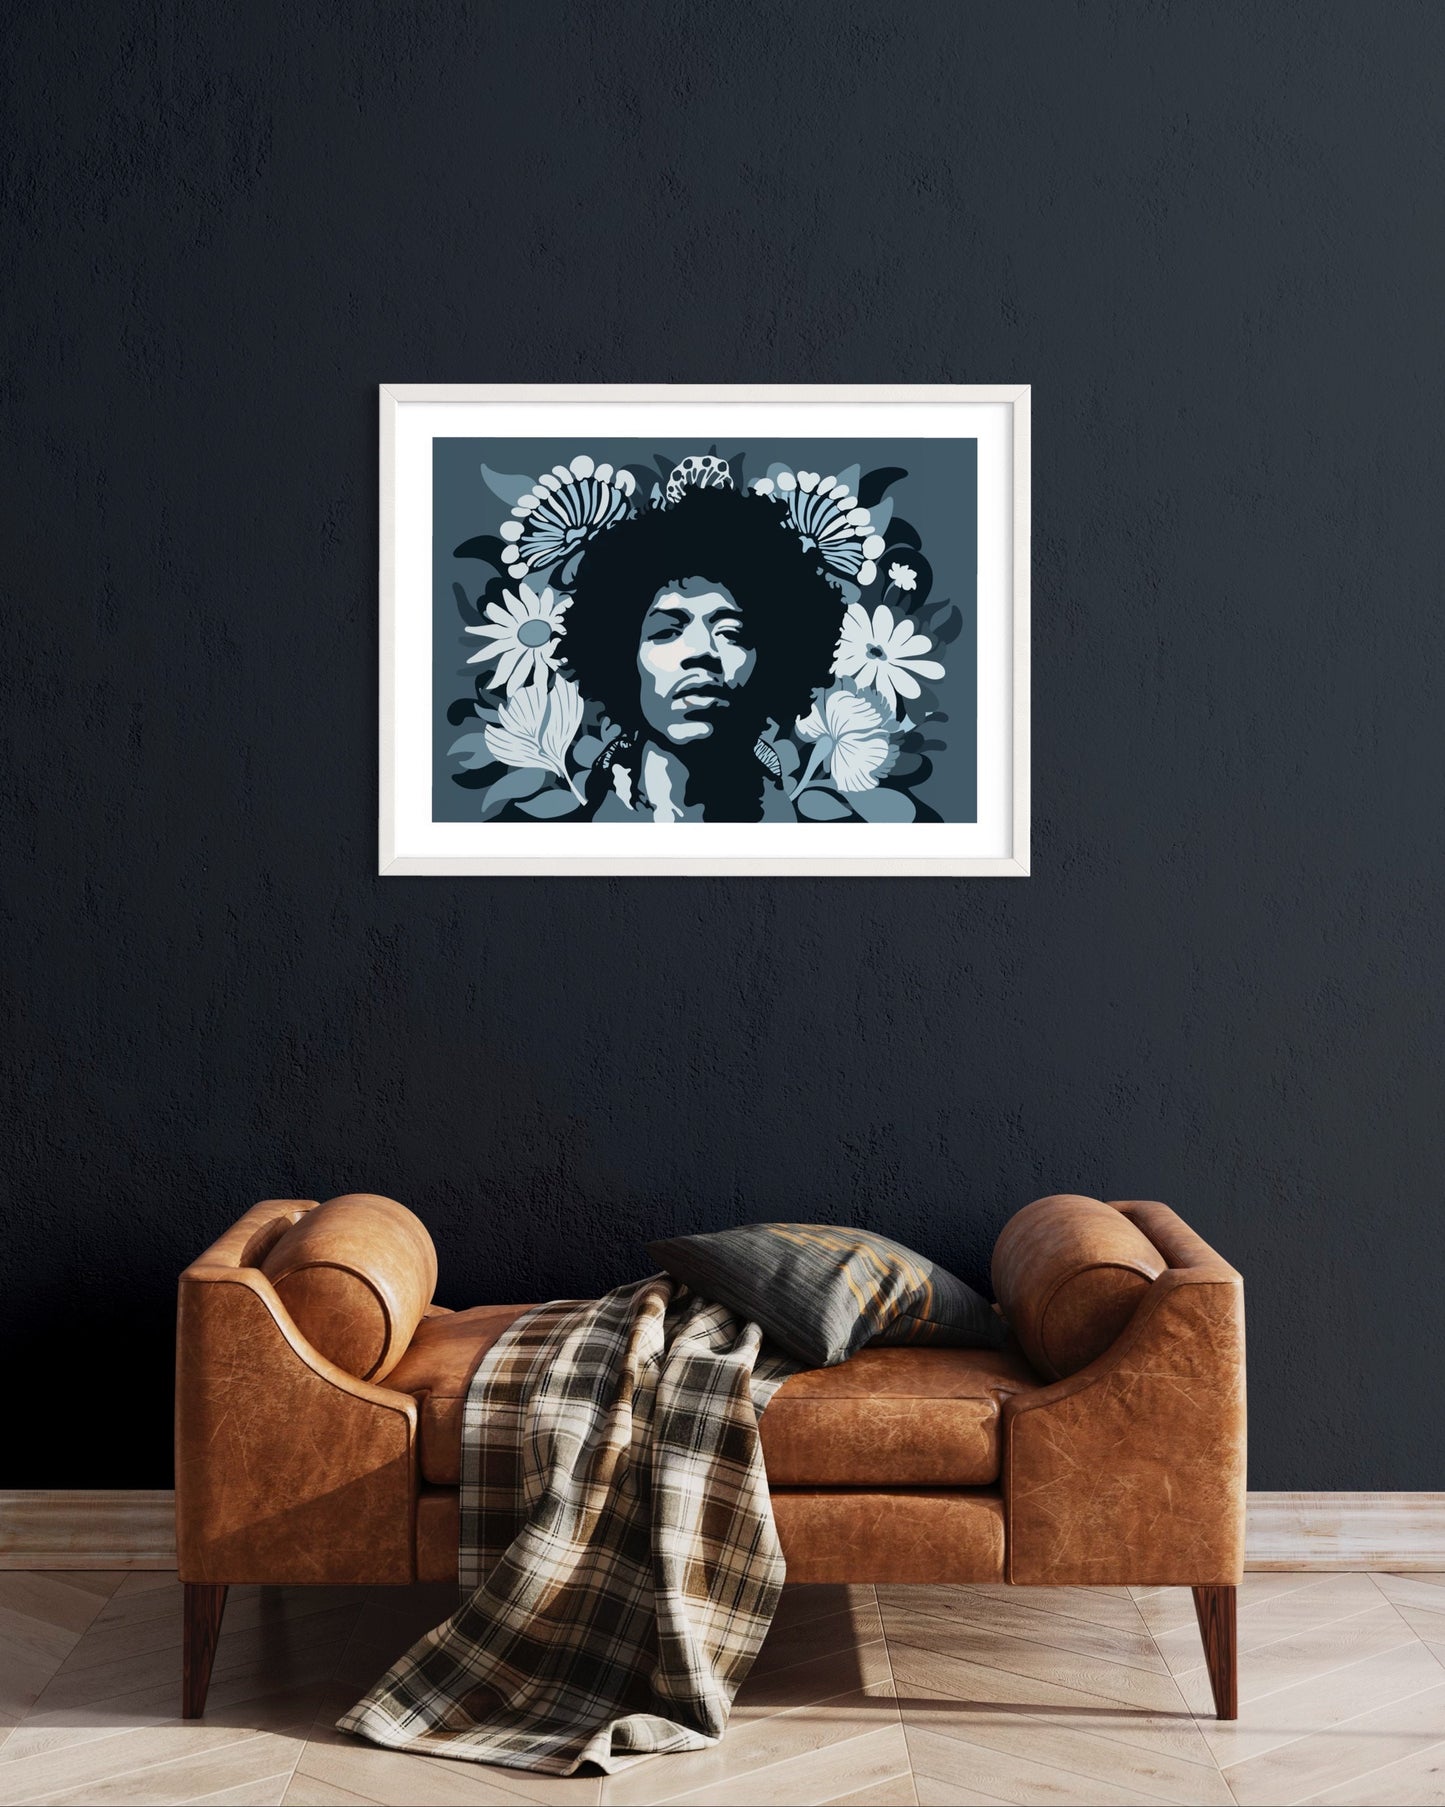 Jimi Hendrix Print, Wall Art Decor, Blue